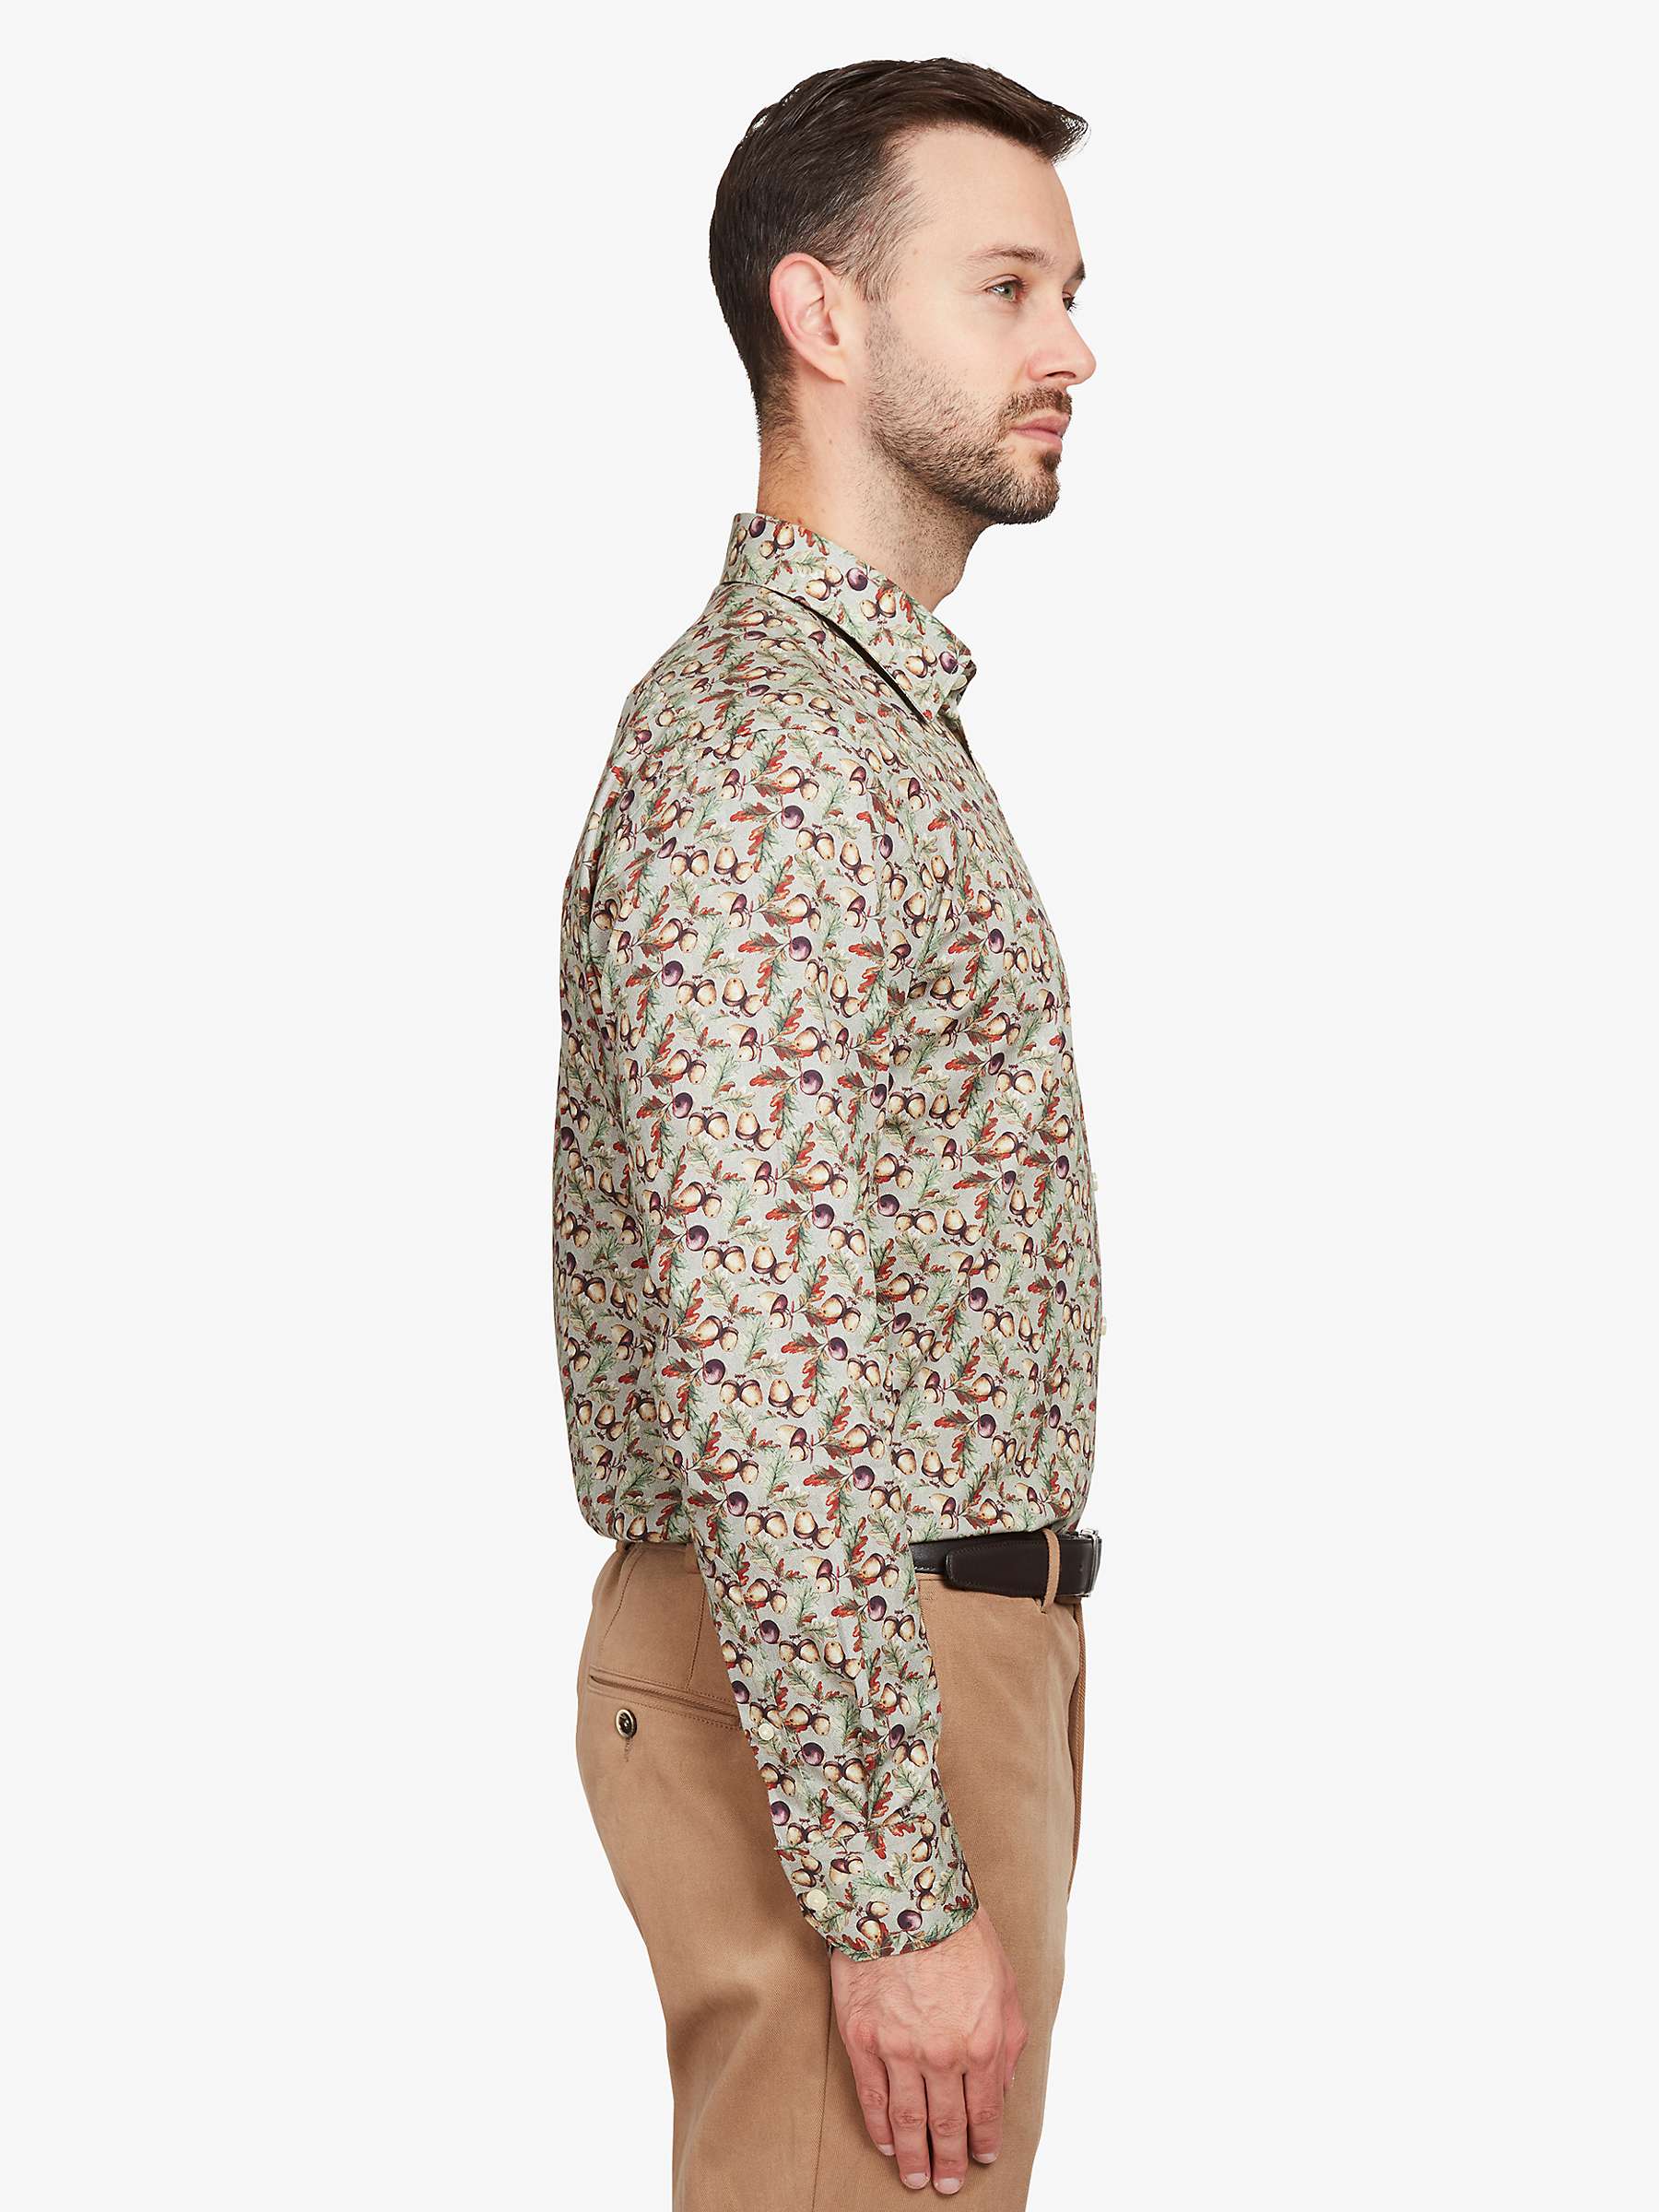 Buy Simon Carter Acorn Long Sleeve Shirt, Beige/Multi Online at johnlewis.com